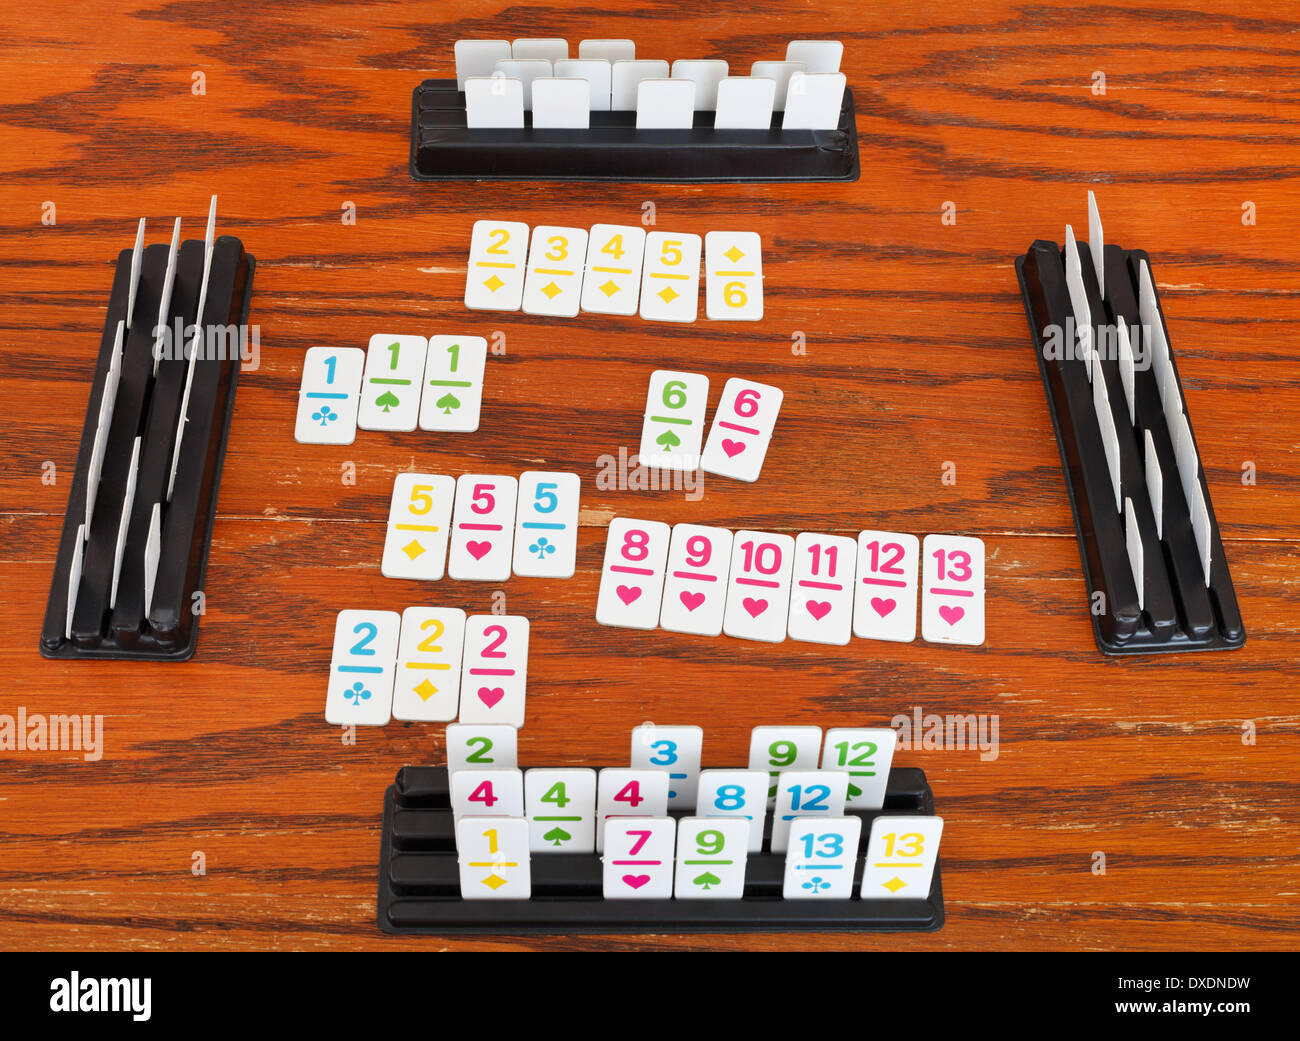 Jeu de cartes Jeu de Rami sur table en bois Photo Stock - Alamy